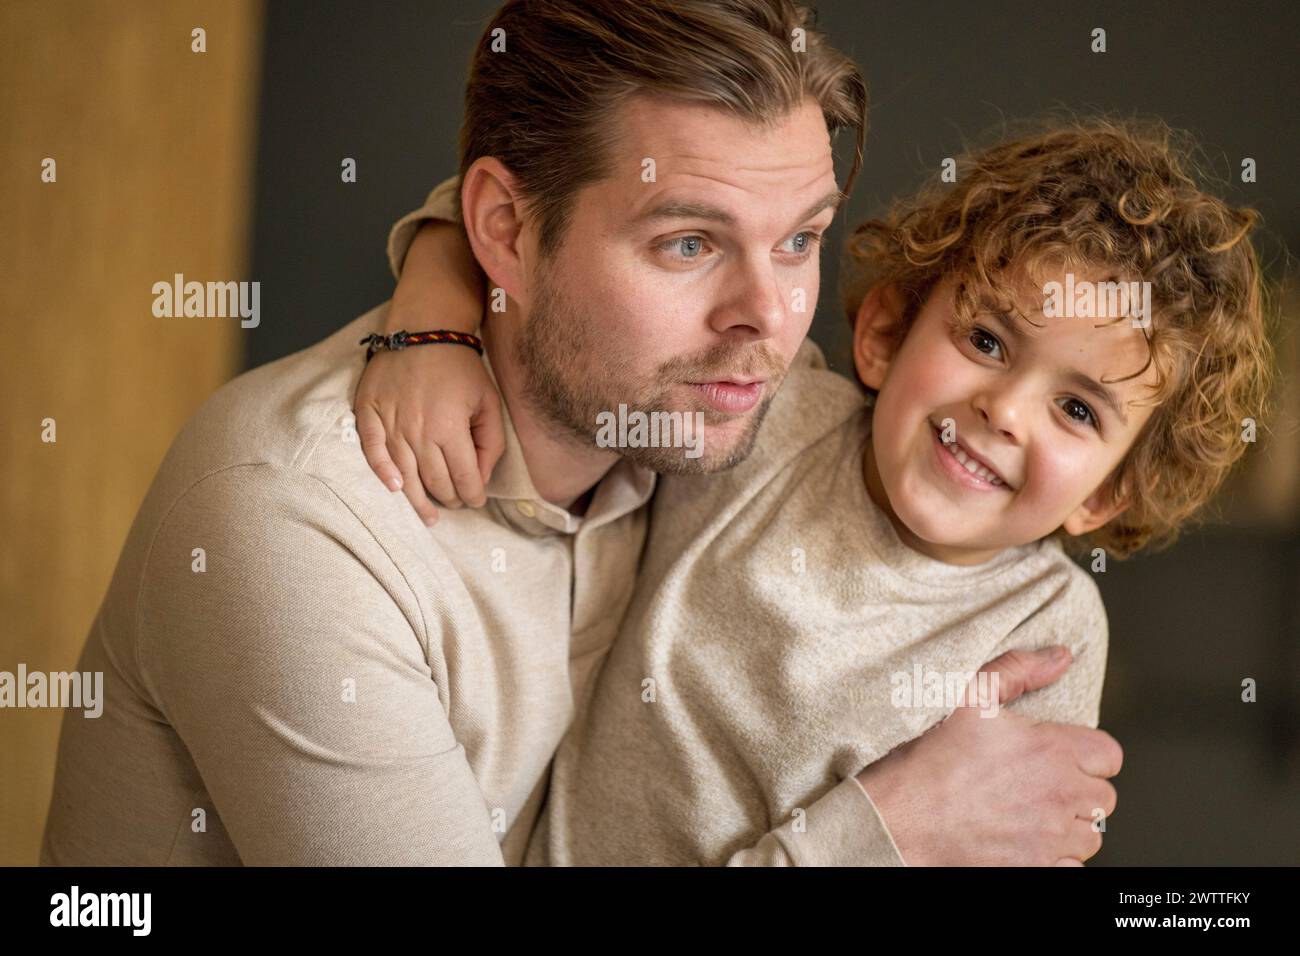 Momento cálido y cariñoso mientras un padre abraza a su pequeño hijo con una sonrisa amorosa. Foto de stock